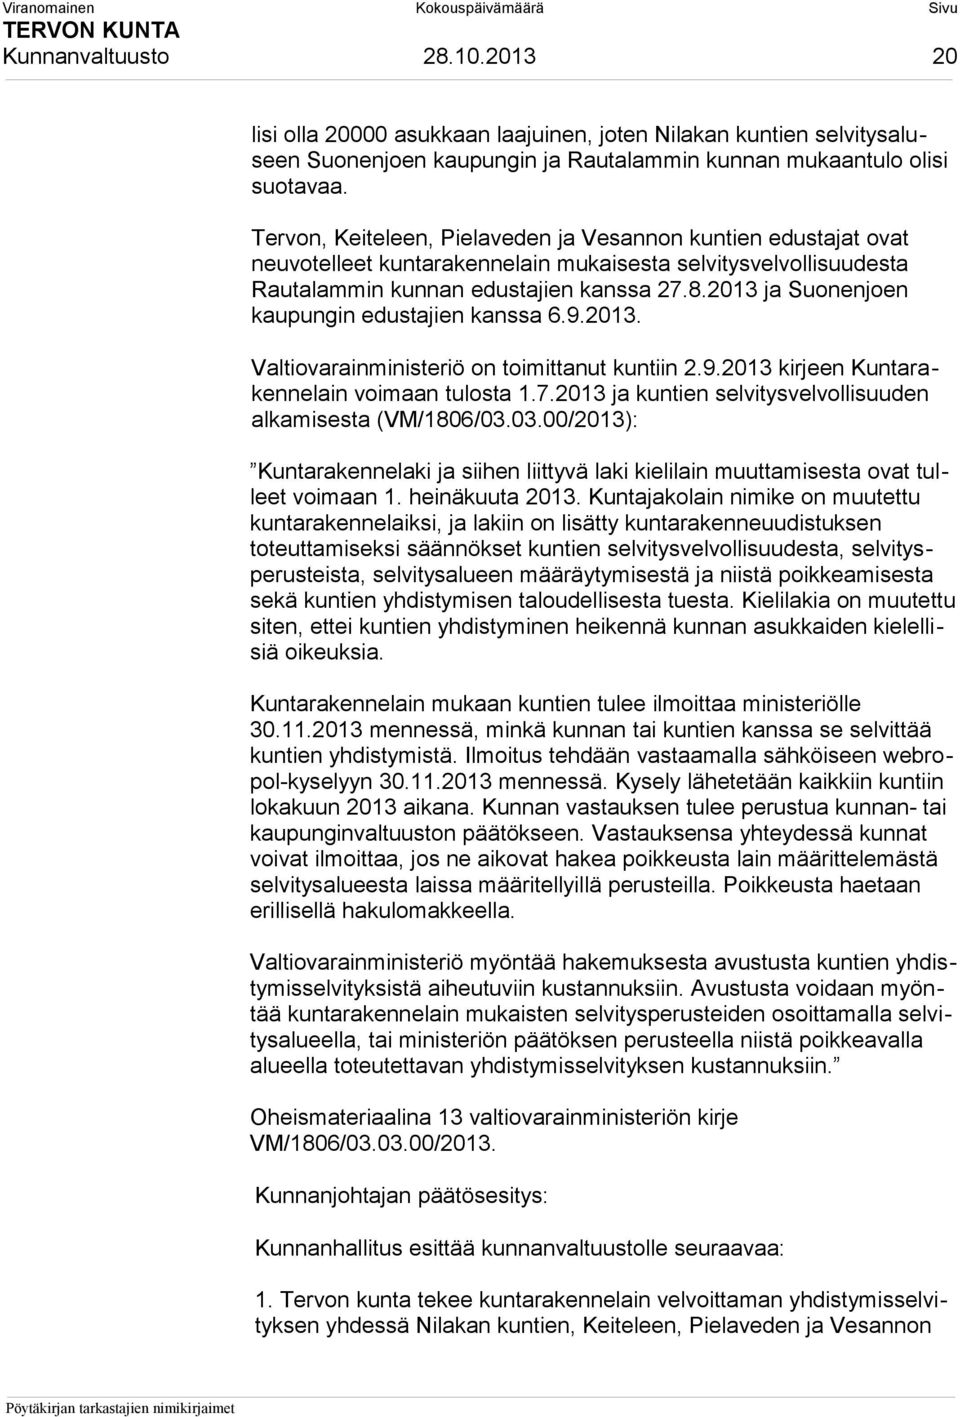 2013 ja Suonenjoen kaupungin edustajien kanssa 6.9.2013. Valtiovarainministeriö on toimittanut kuntiin 2.9.2013 kirjeen Kuntarakennelain voimaan tulosta 1.7.